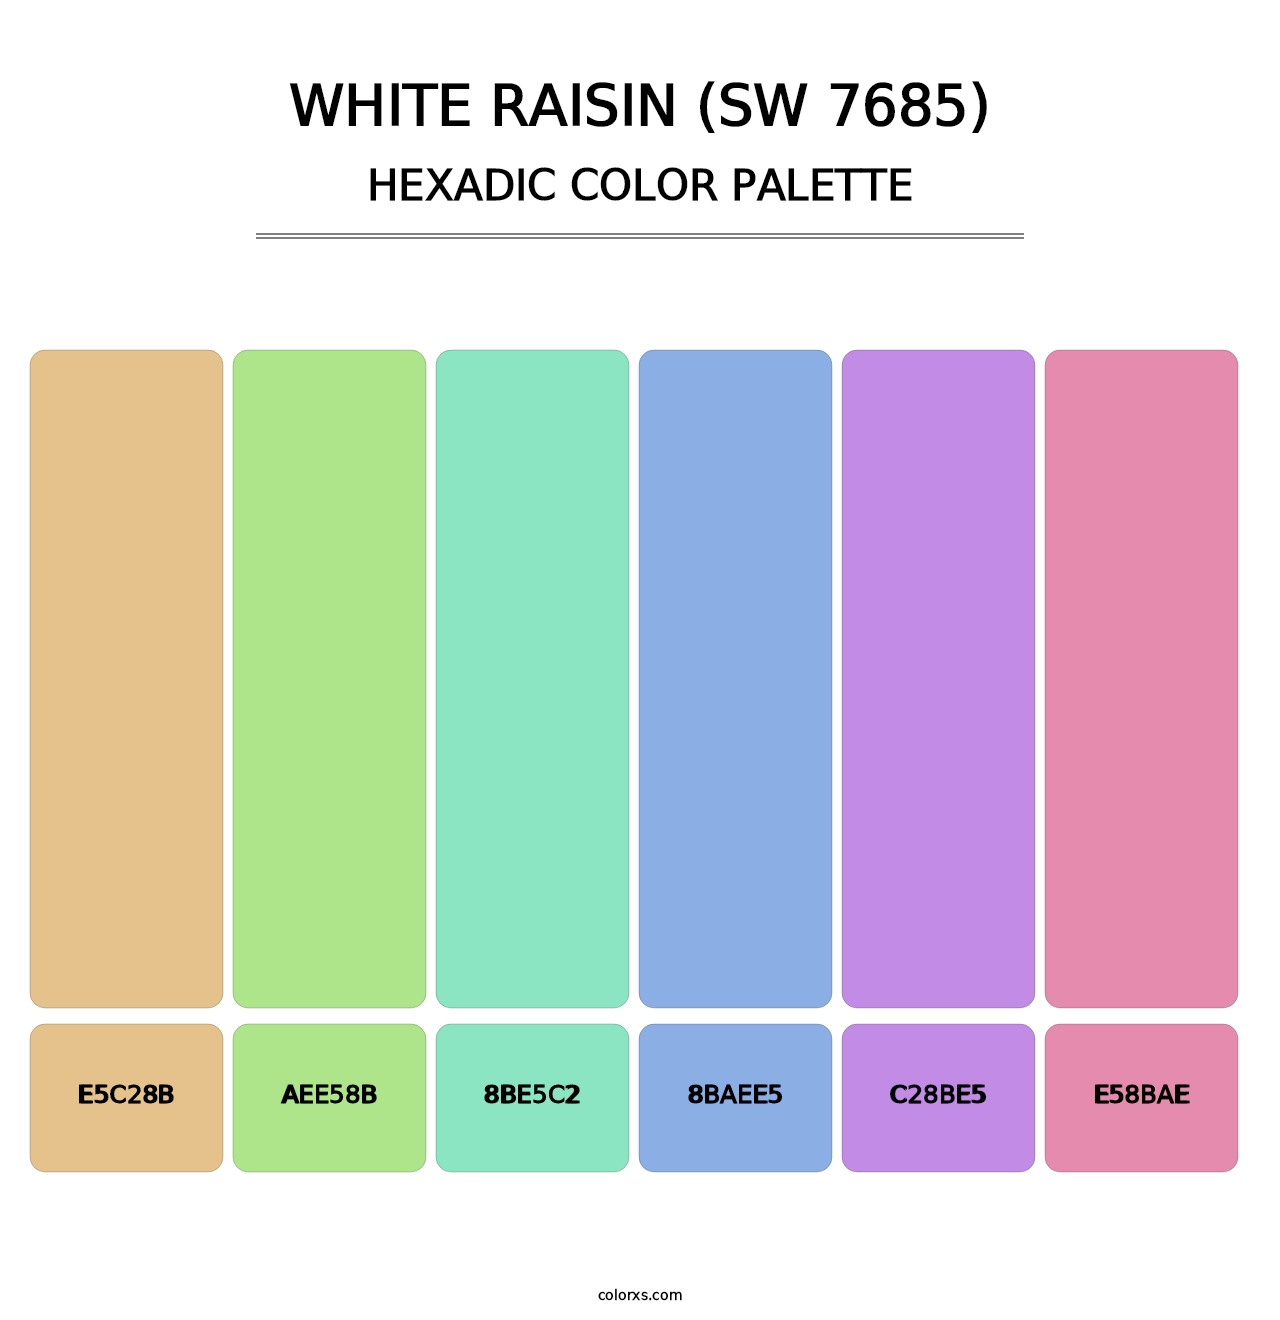 White Raisin (SW 7685) - Hexadic Color Palette